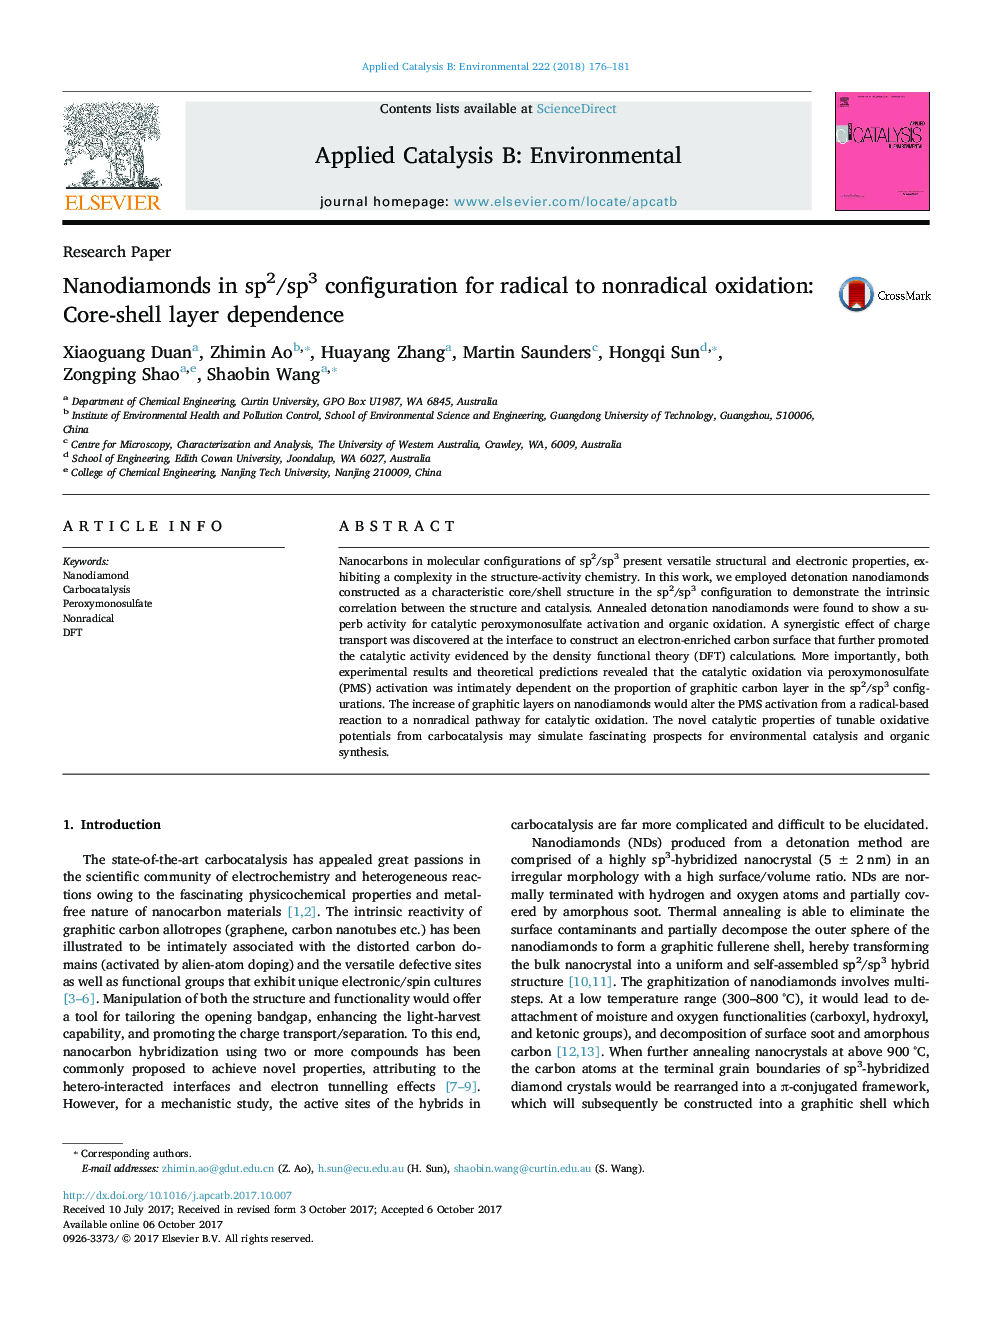 مقاله پژوهشی نانوذرات در پیکربندی sp2 / sp3 برای اکسیداسیون رادیکال و غیر ردیابی: وابستگی لايه هسته پوسته